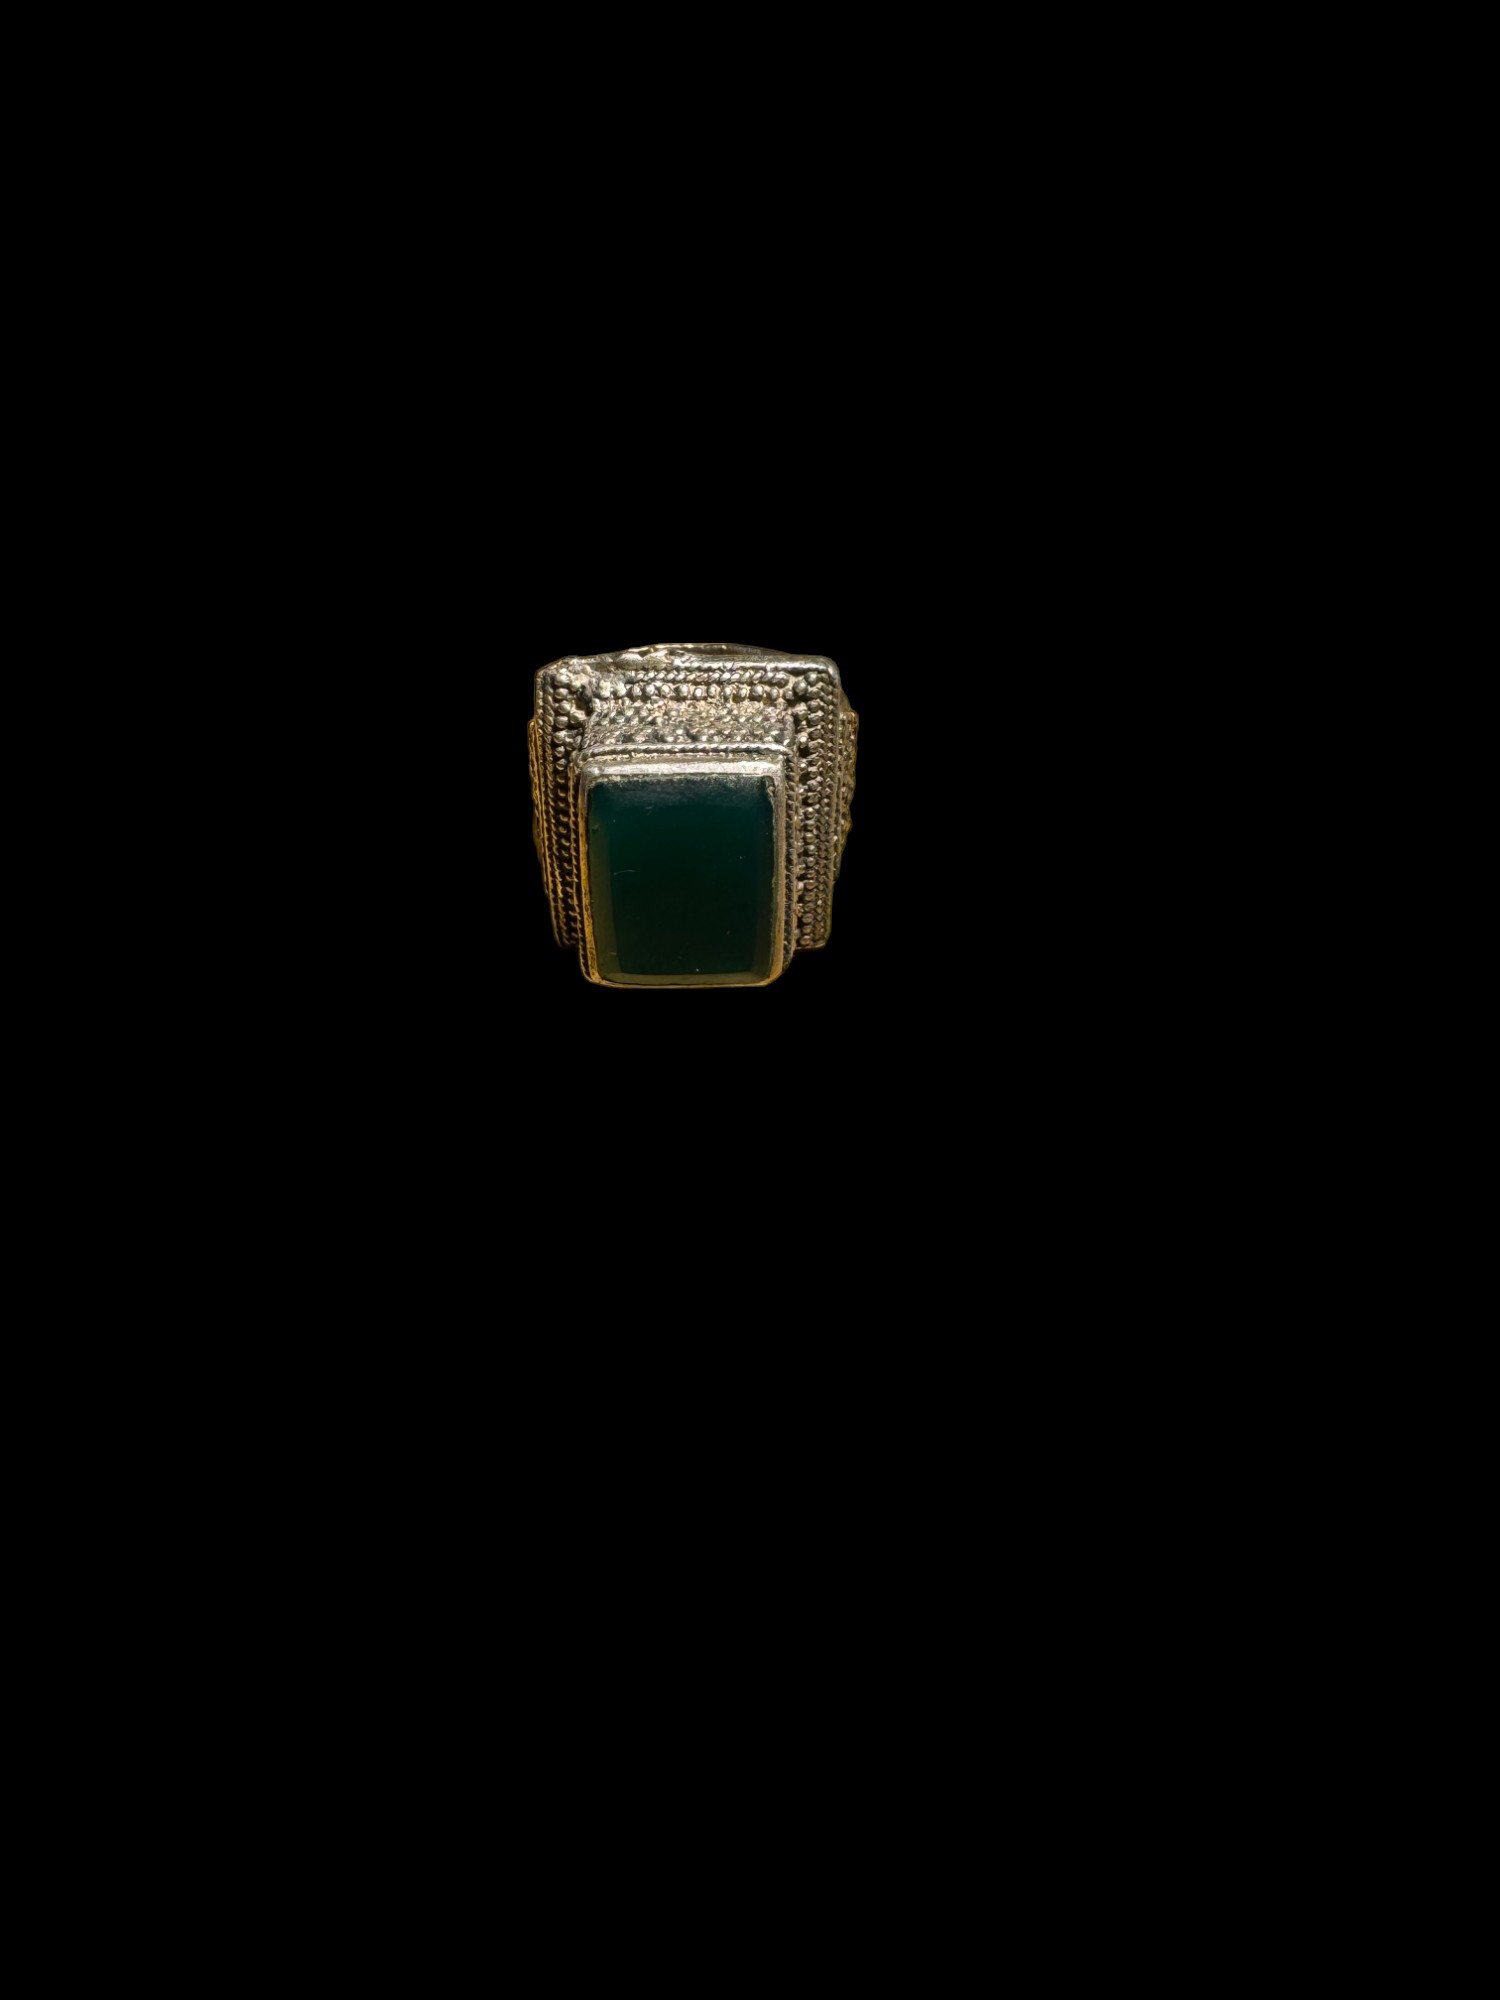 Ottoman Black Stone White Metal Ring Size S